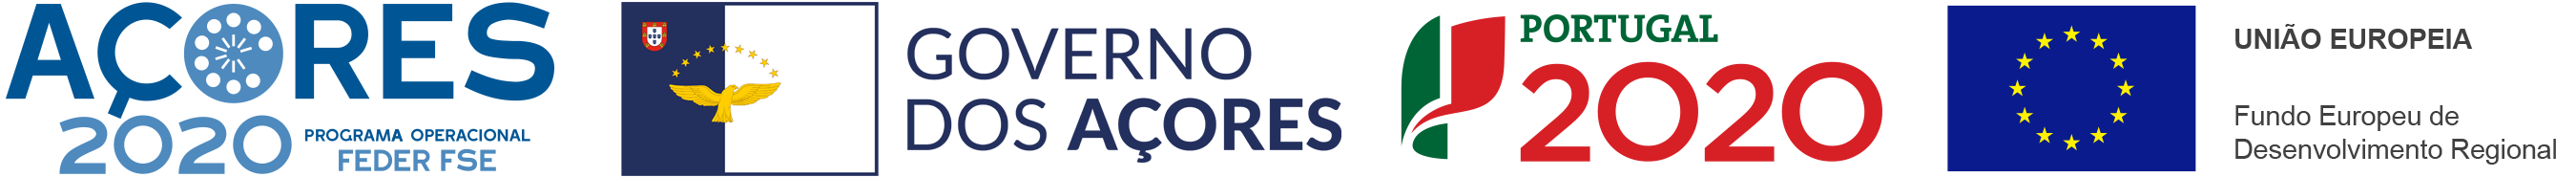 AÇORES 2020 - programa operational FEDER FSE